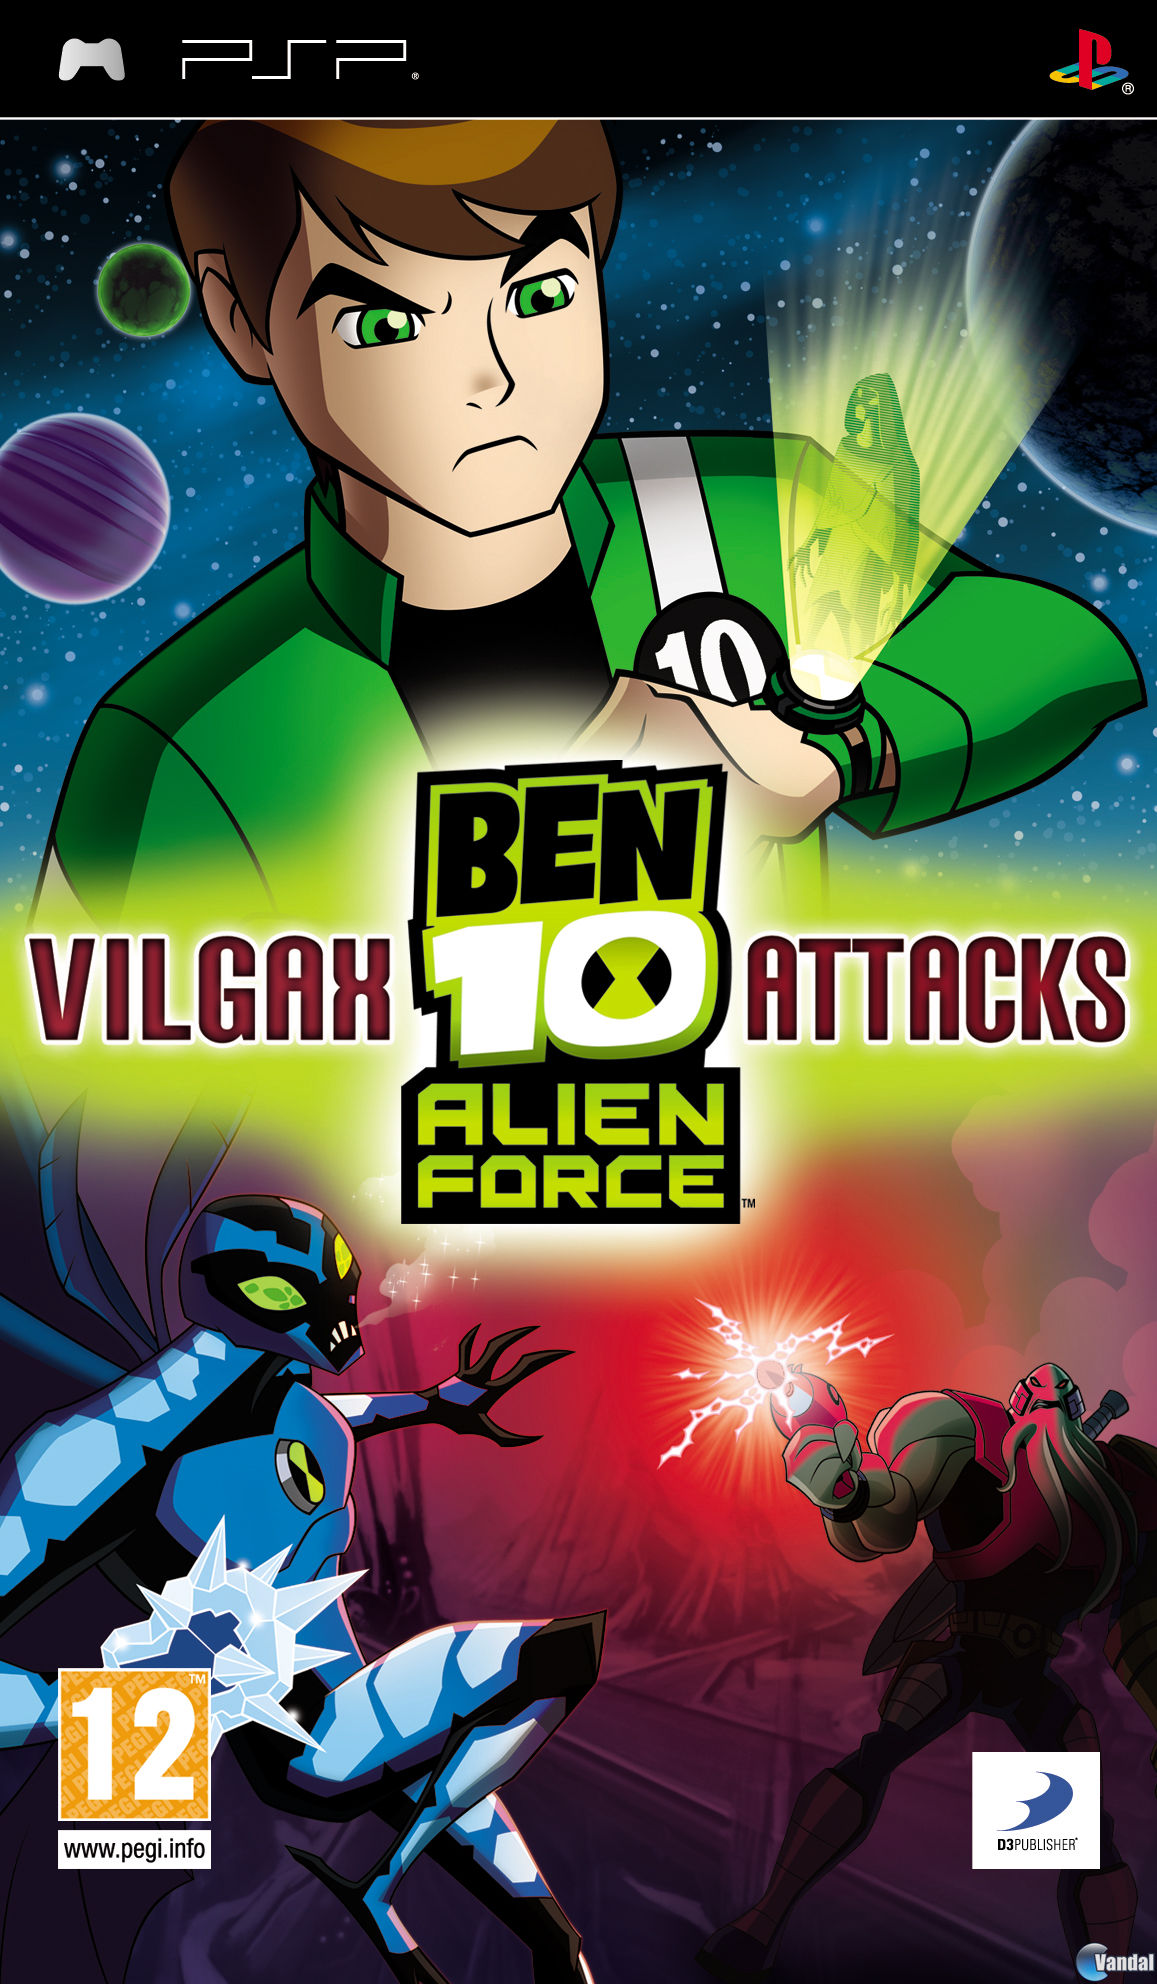 ben 10 alien force vilgax attacks ben 10 new series